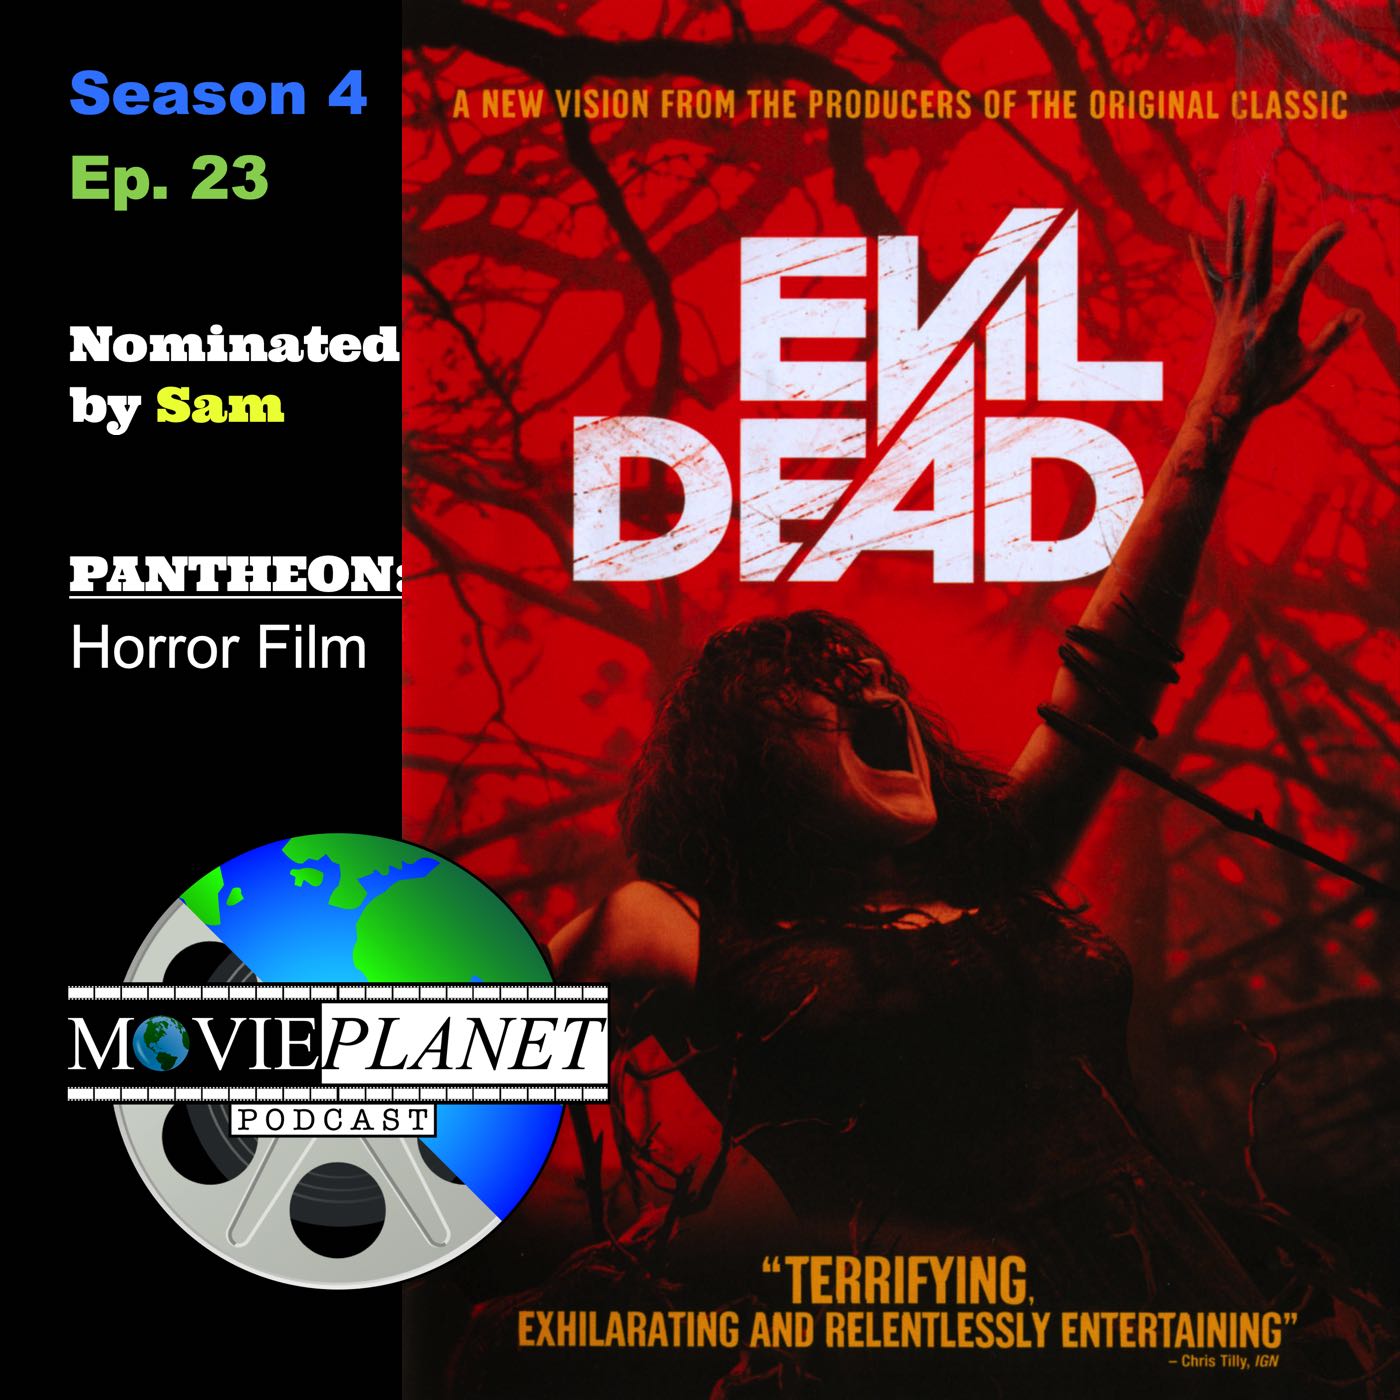 Evil Dead Full Movie Online